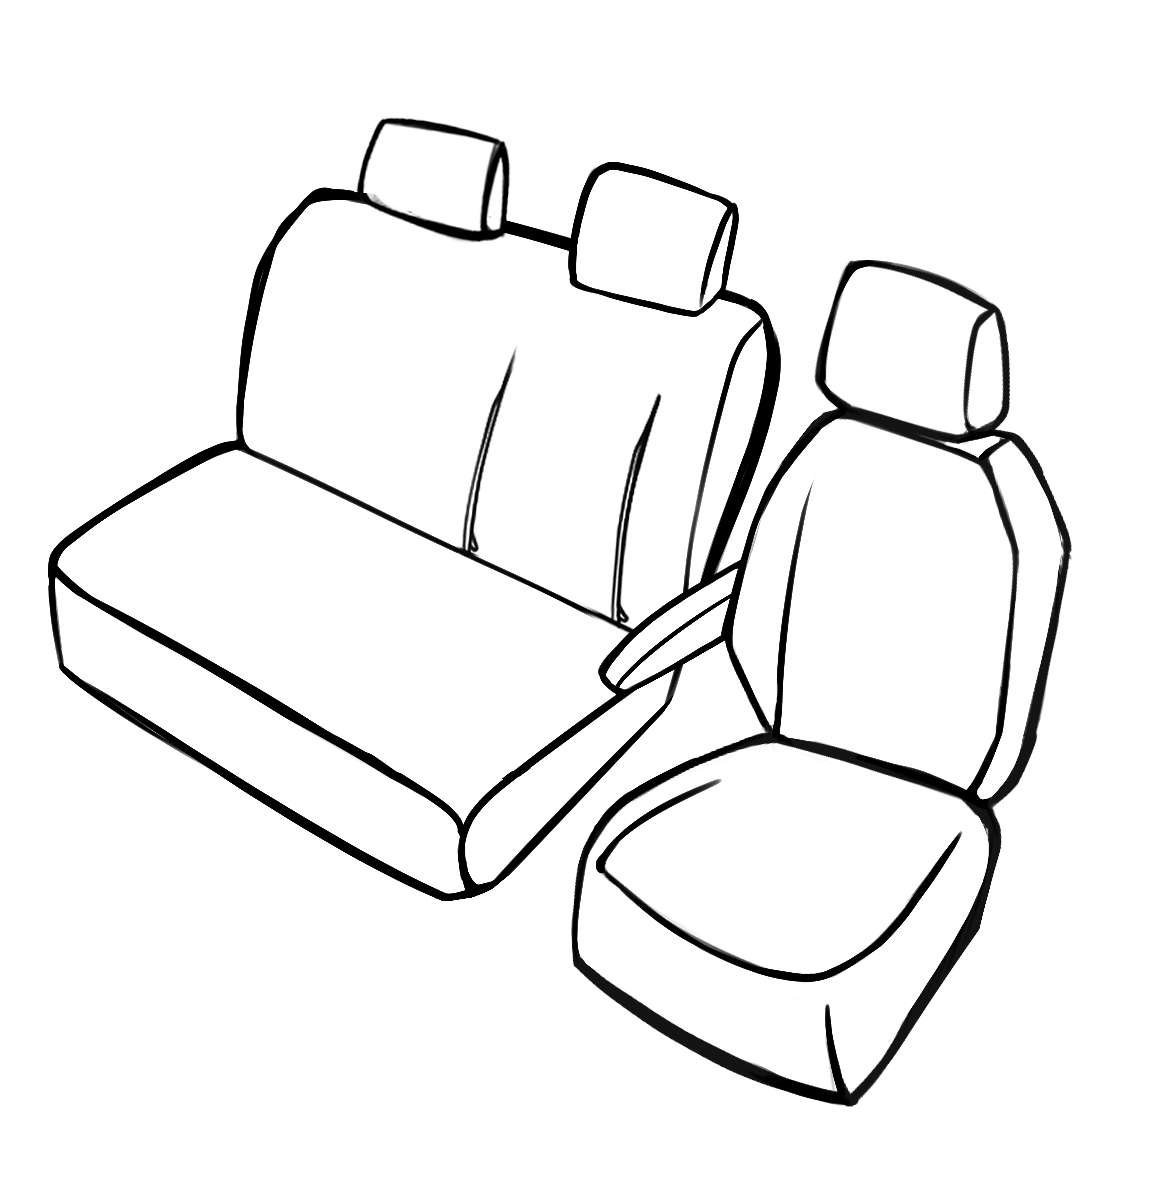 Housse de siège Transporter en simili cuir pour Citroën Jumper, Peugeot Boxer, Fiat Ducato, siège simple et double